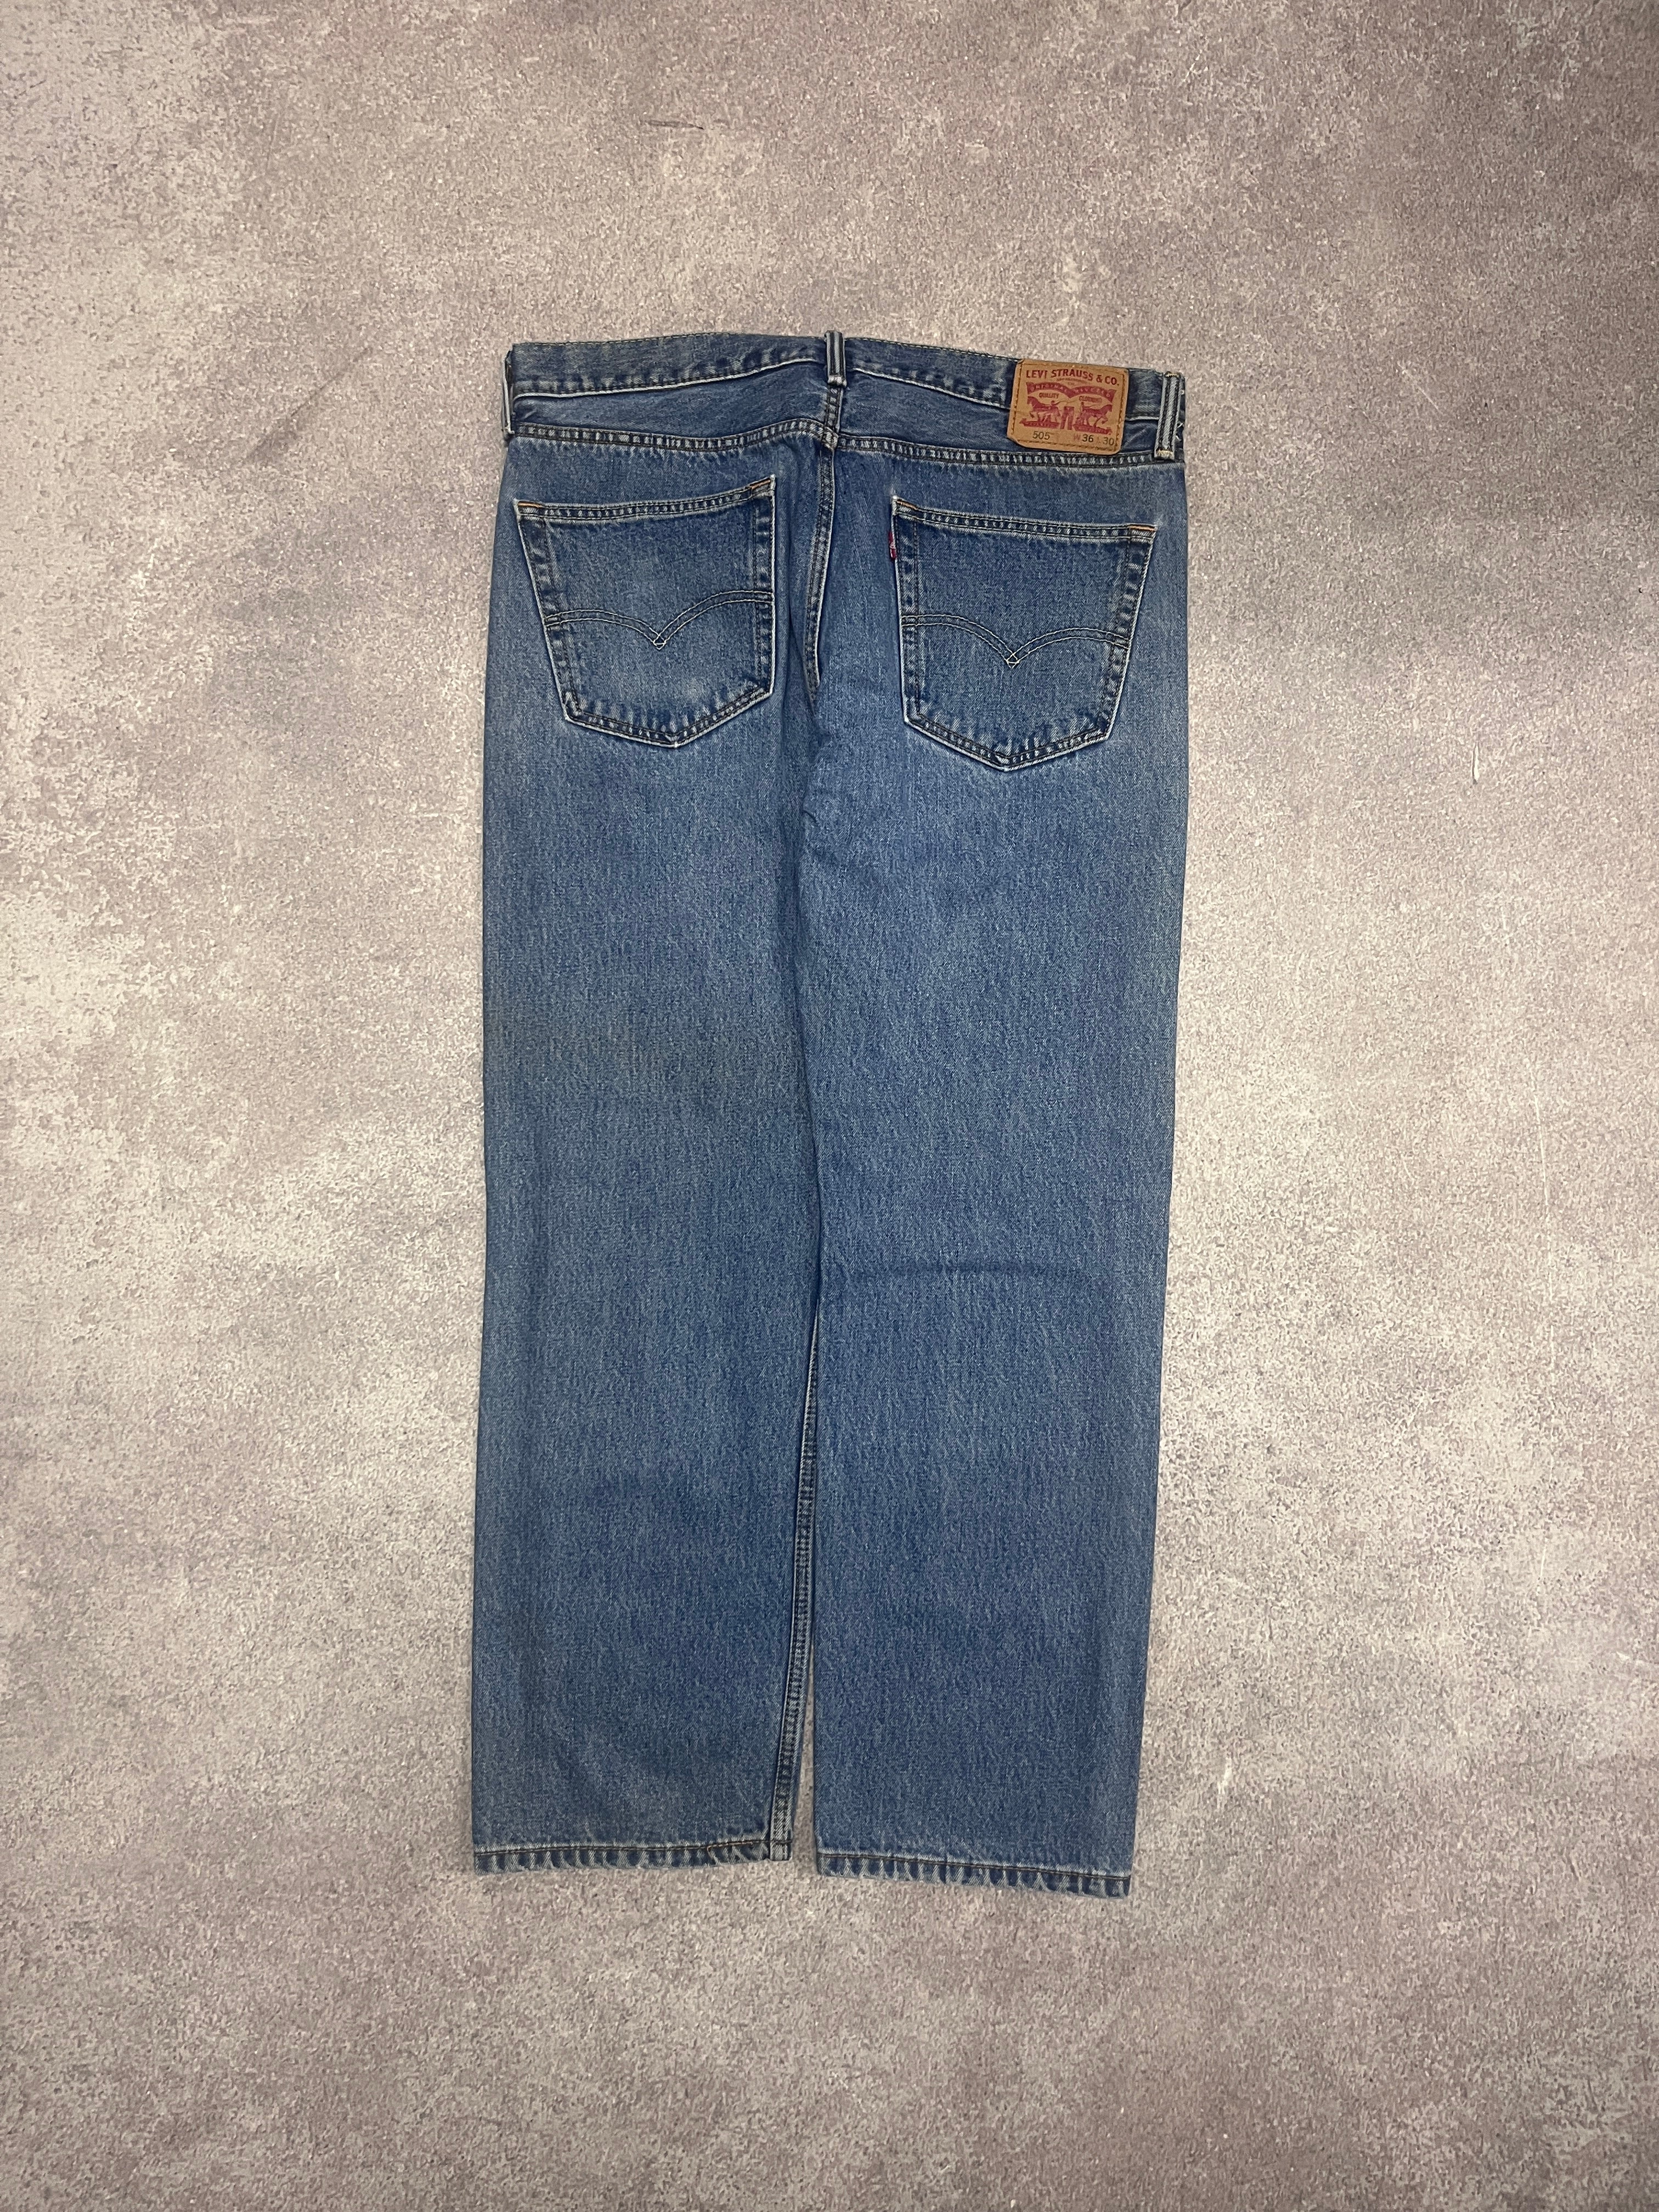 Vintage Levi 505 Denim Jeans Blue // W36 L30 - RHAGHOUSE VINTAGE